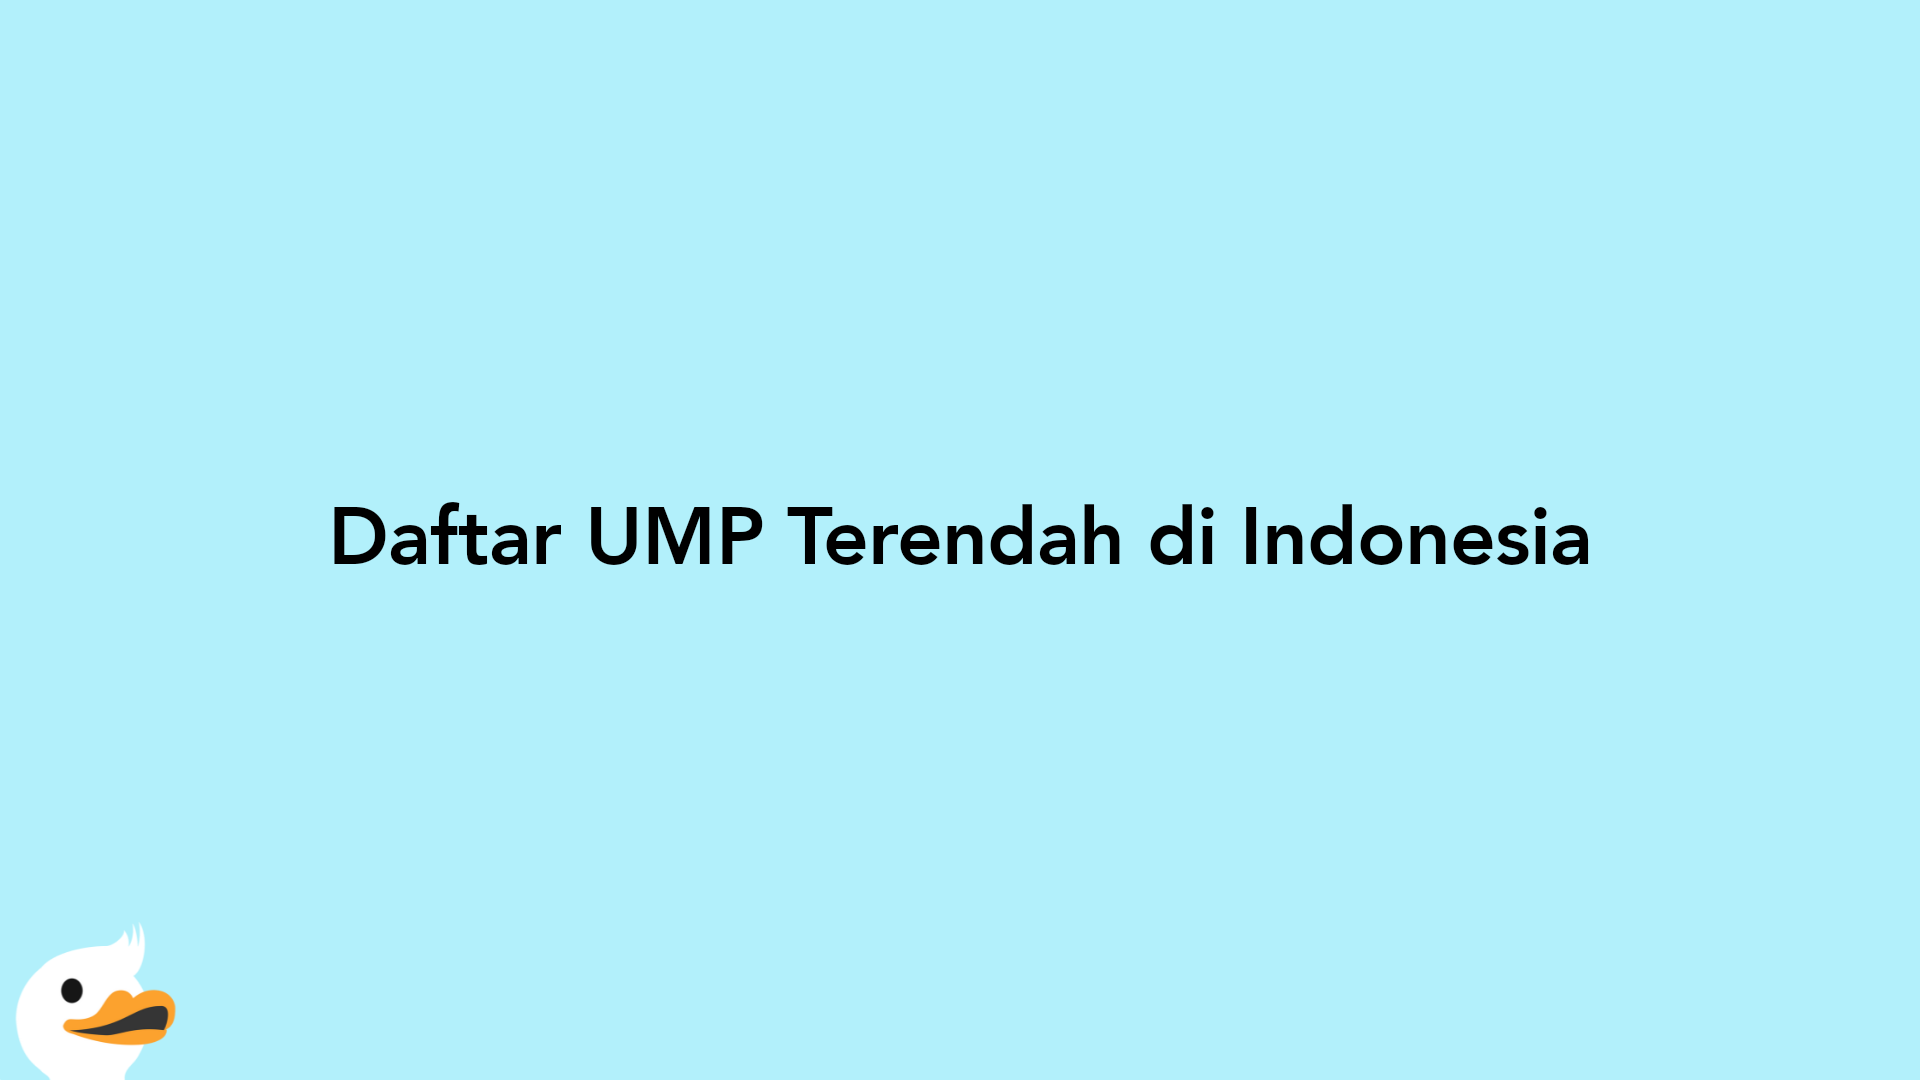 Daftar UMP Terendah di Indonesia